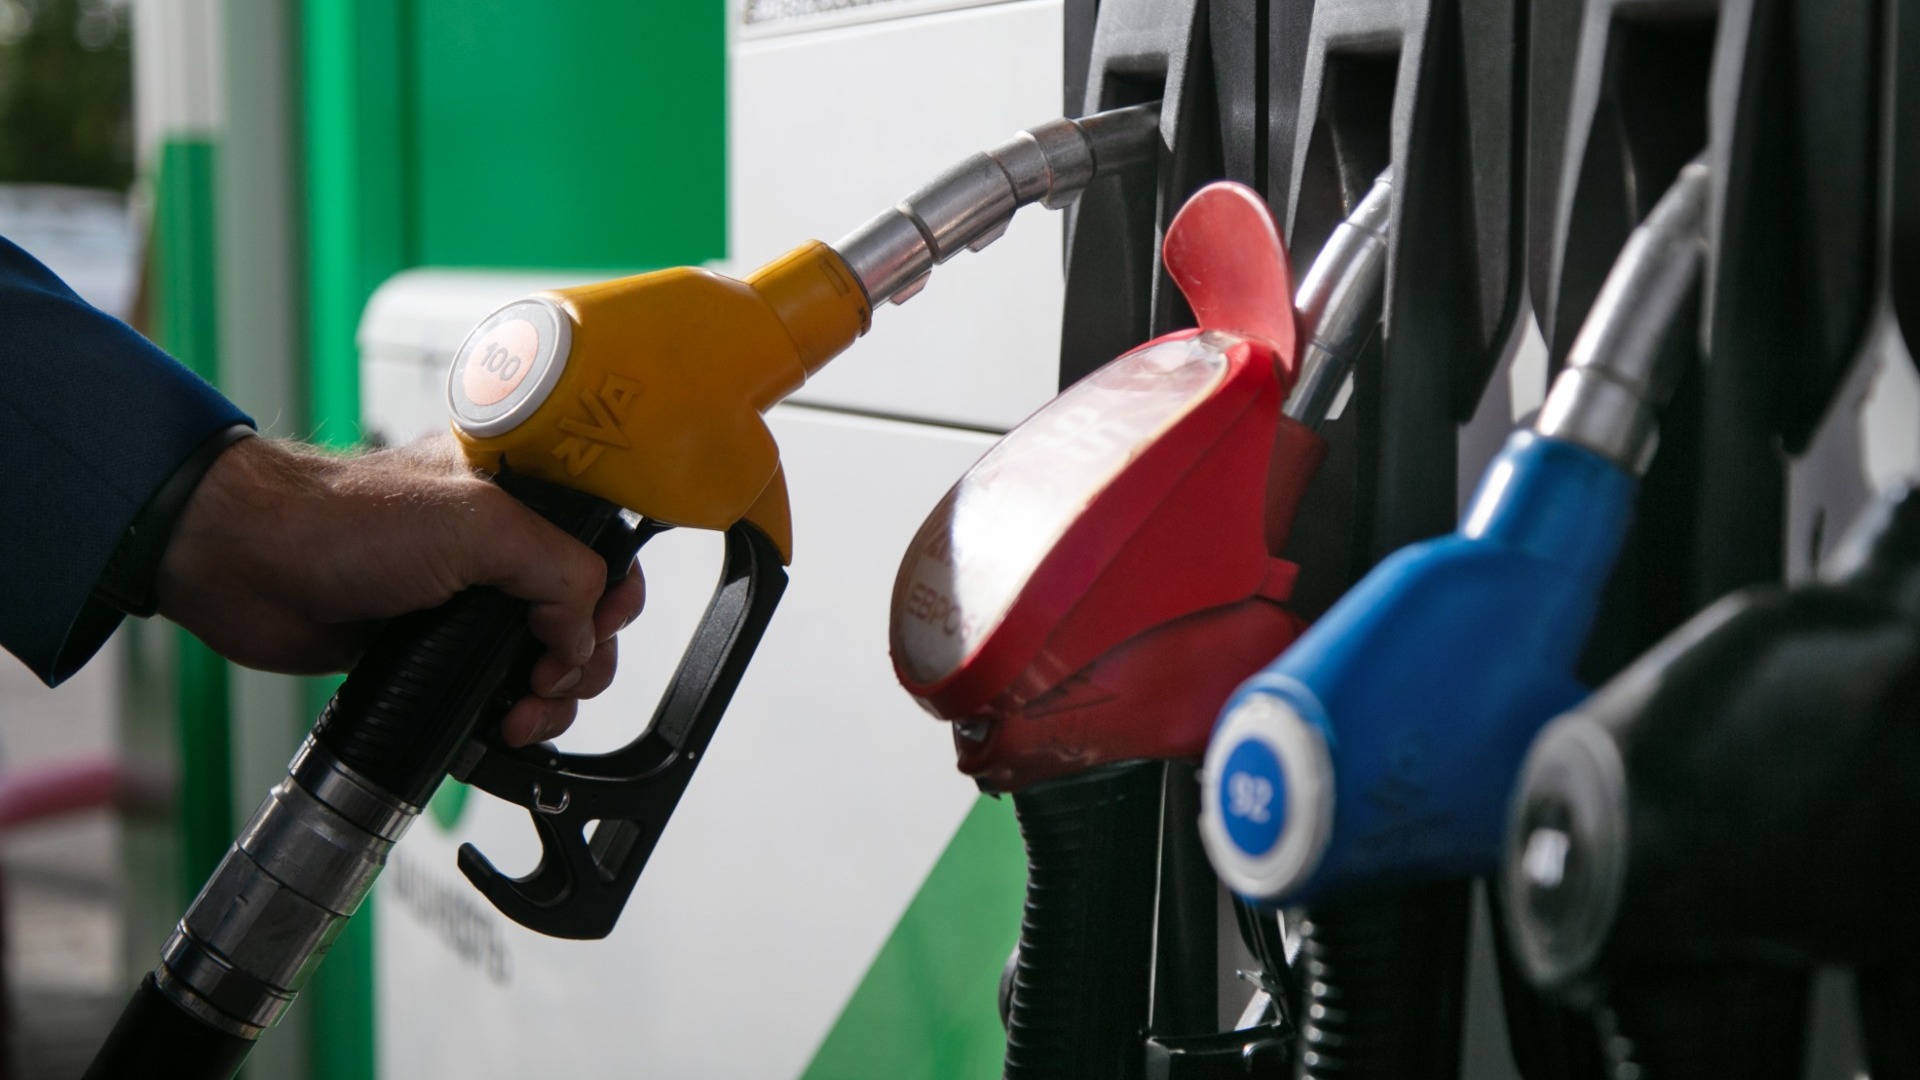 Причины роста цен на бензин в Удмуртии расследует антимонопольная служба